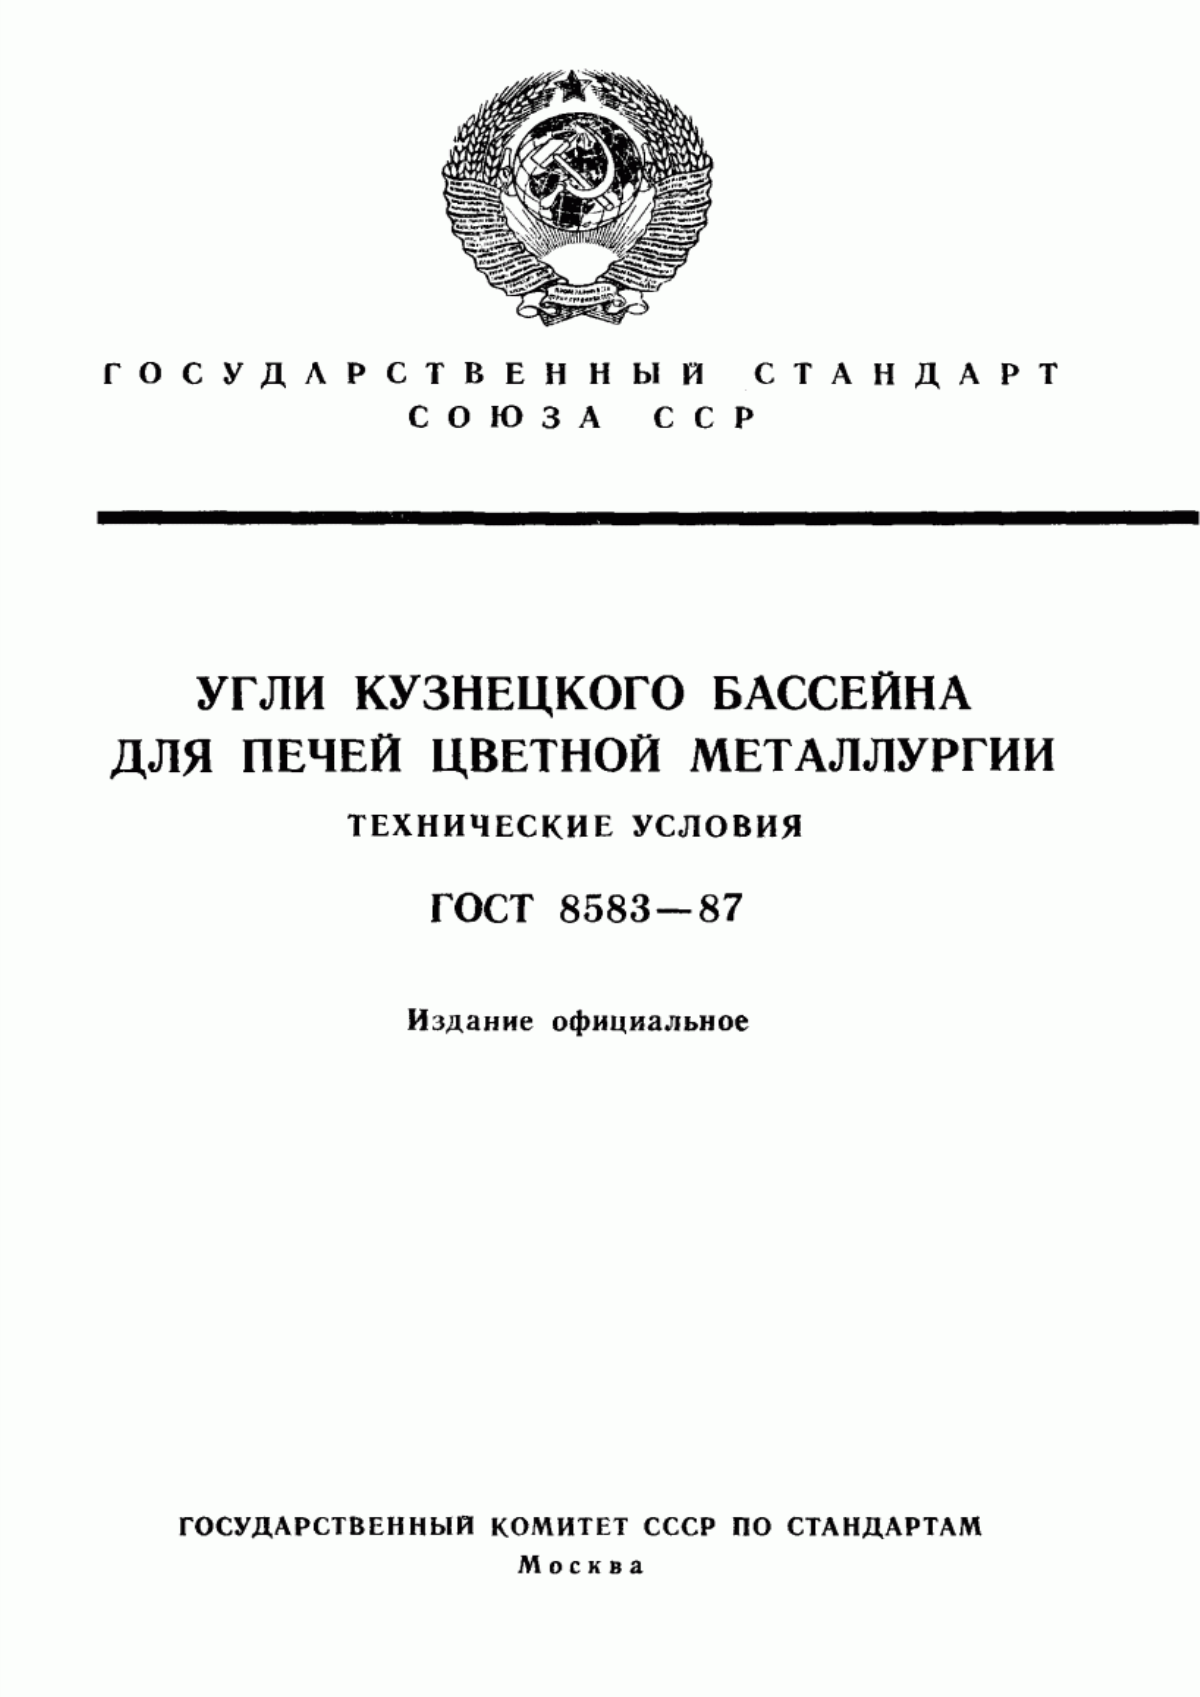 ГОСТ 8583-87 Угли Кузнецкого бассейна для печей цветной металлургии. Технические условия